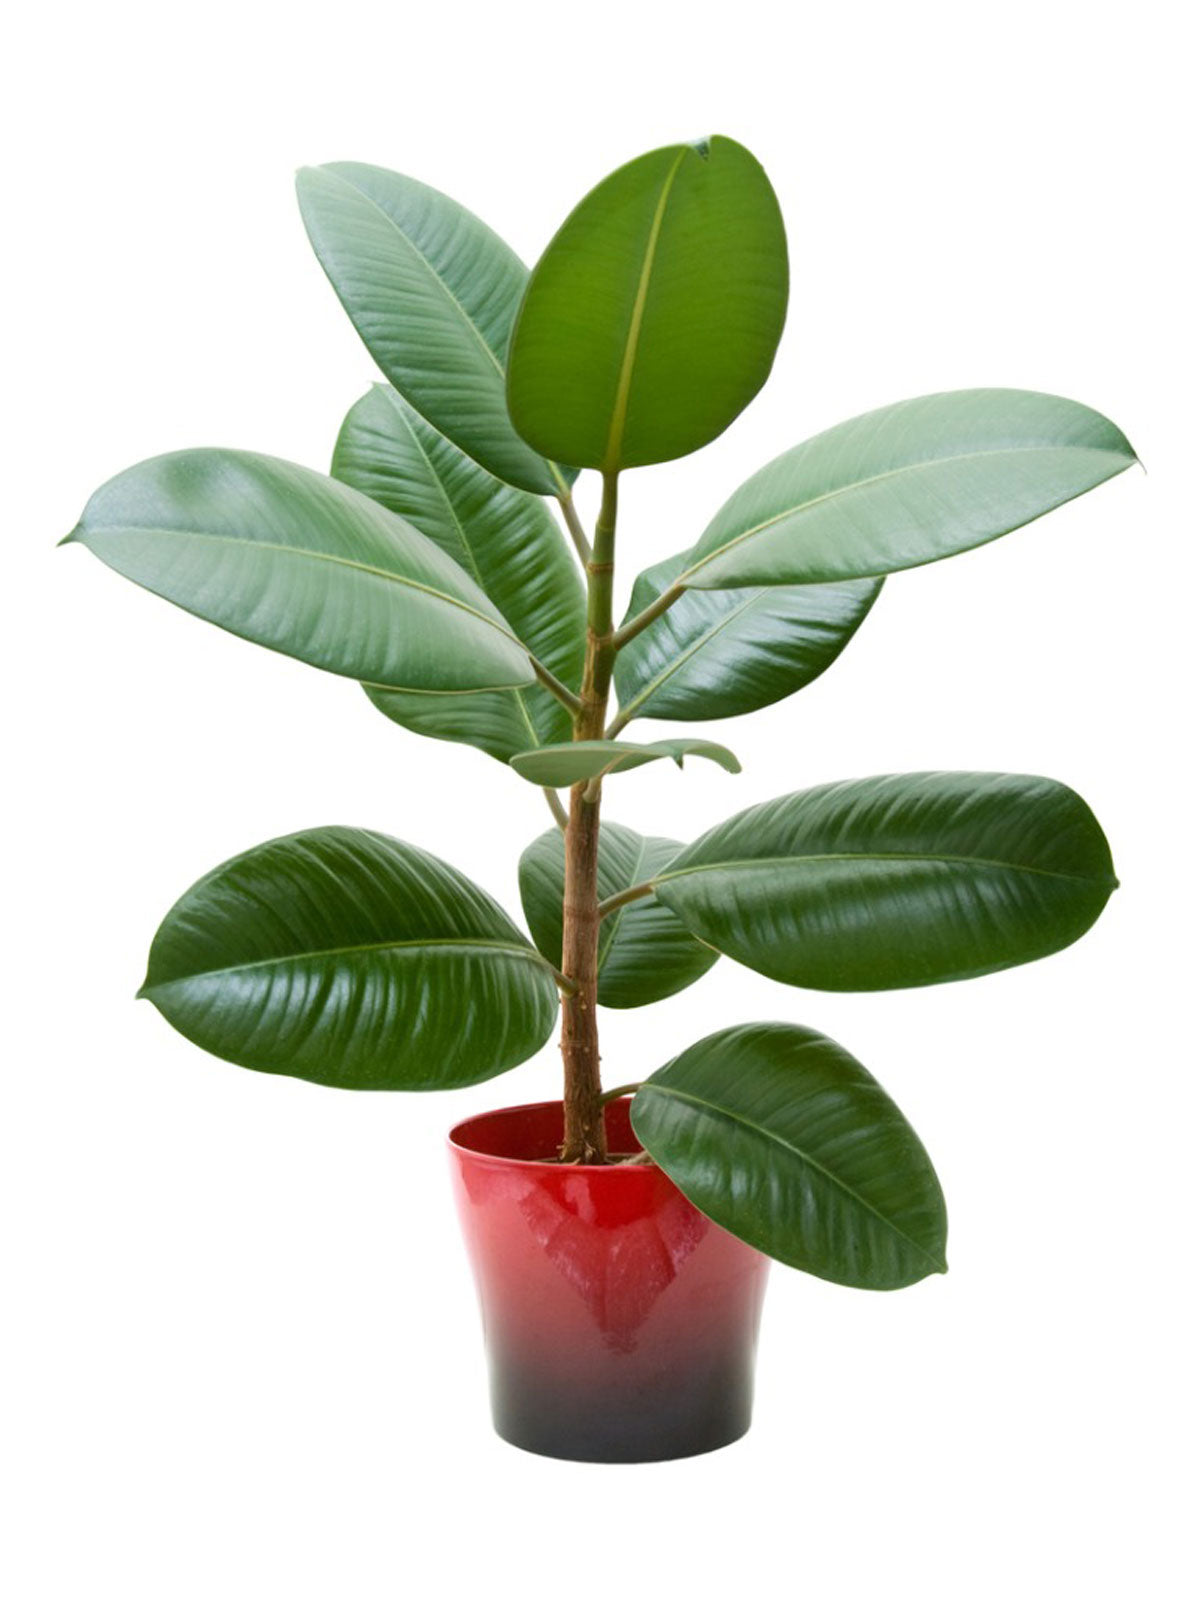 File:Rubber Plant (Ficus elastica 'Robusta').jpg - Wikipedia